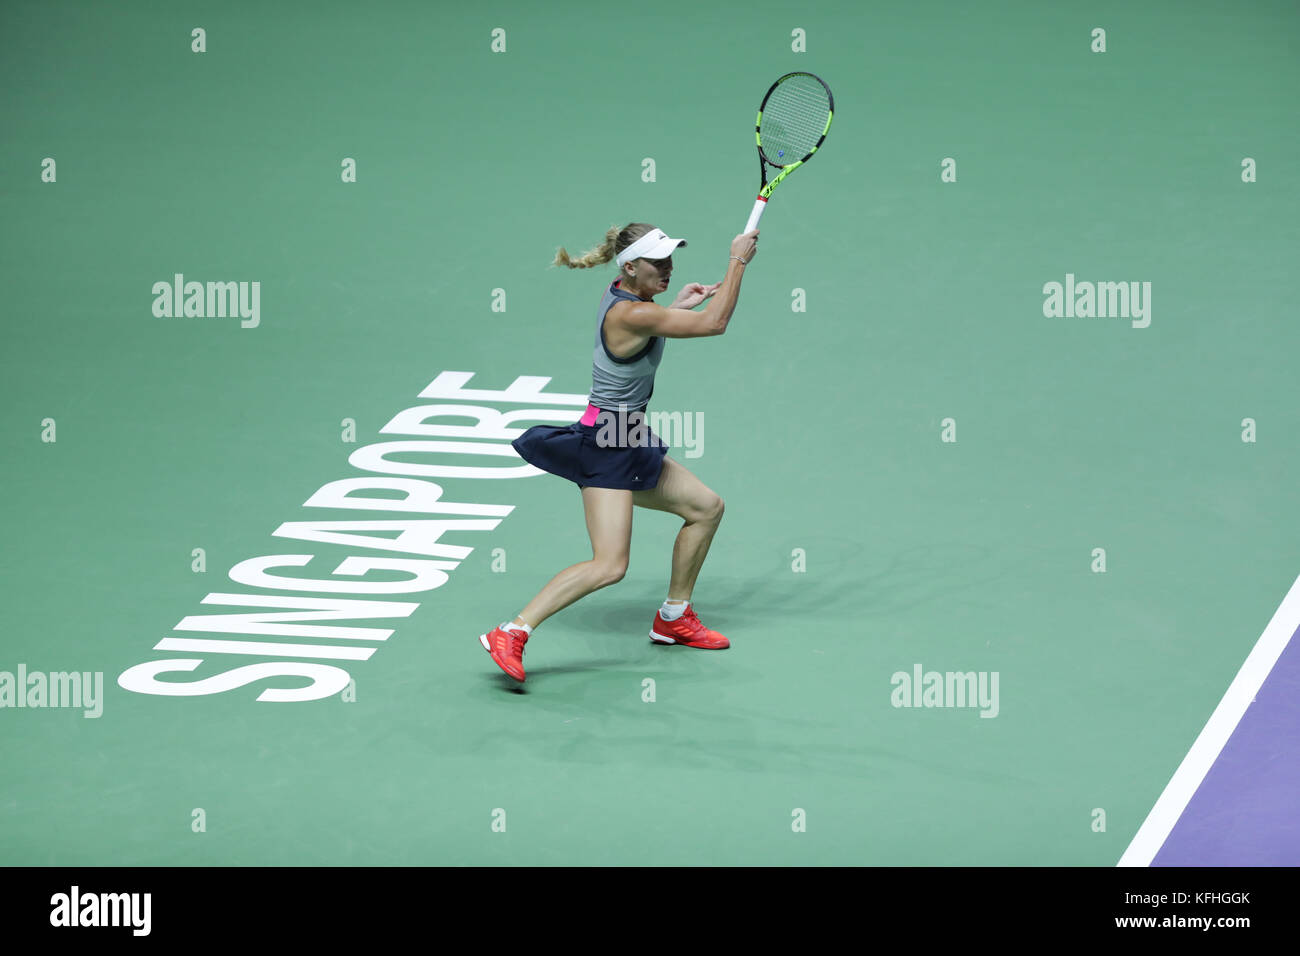 La joueuse de tennis danoise Caroline Wozniacki est en action dans le match de la demi finale finale wta tennis player vs République tchèque Karolina pliskova le Oct 28, 2017 à Singapour, Singapour. crédit : yan lerval/aflo/Alamy live news Banque D'Images